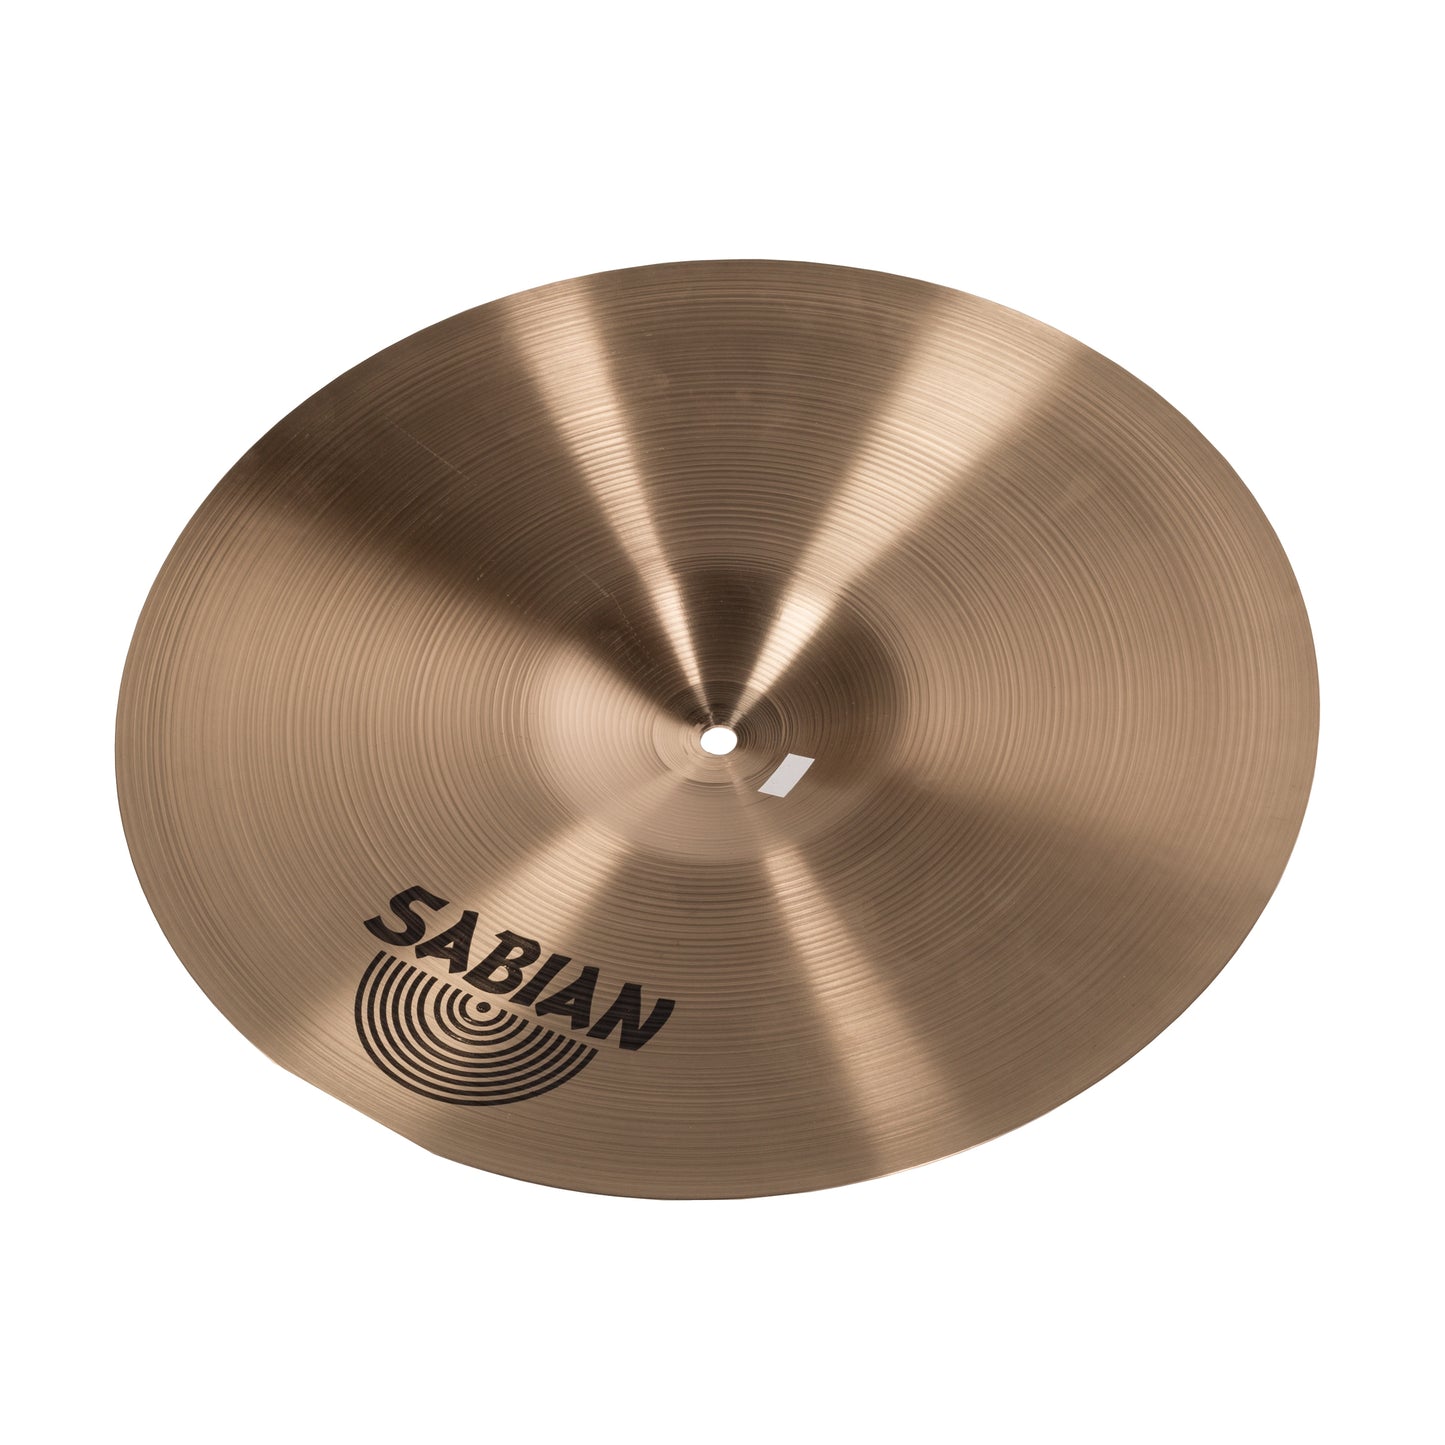 Sabian AA 16" Rock Crash Cymbal